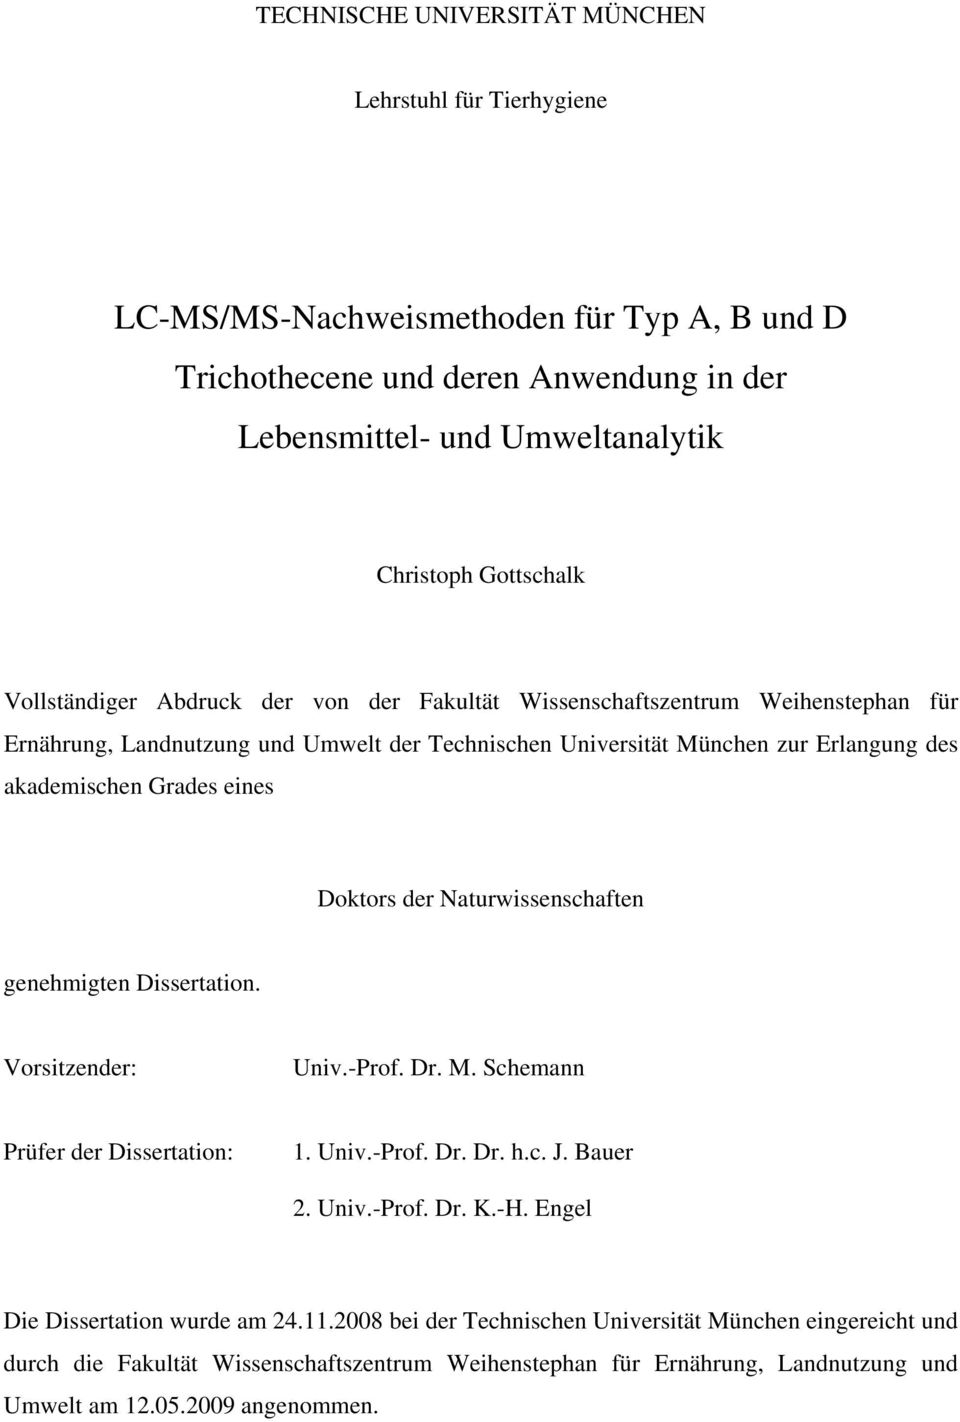 Doktors der Naturwissenschaften genehmigten Dissertation. Vorsitzender: Univ.-Prof. Dr. M. Schemann Prüfer der Dissertation: 1. Univ.-Prof. Dr. Dr. h.c. J. Bauer 2. Univ.-Prof. Dr. K.-H.